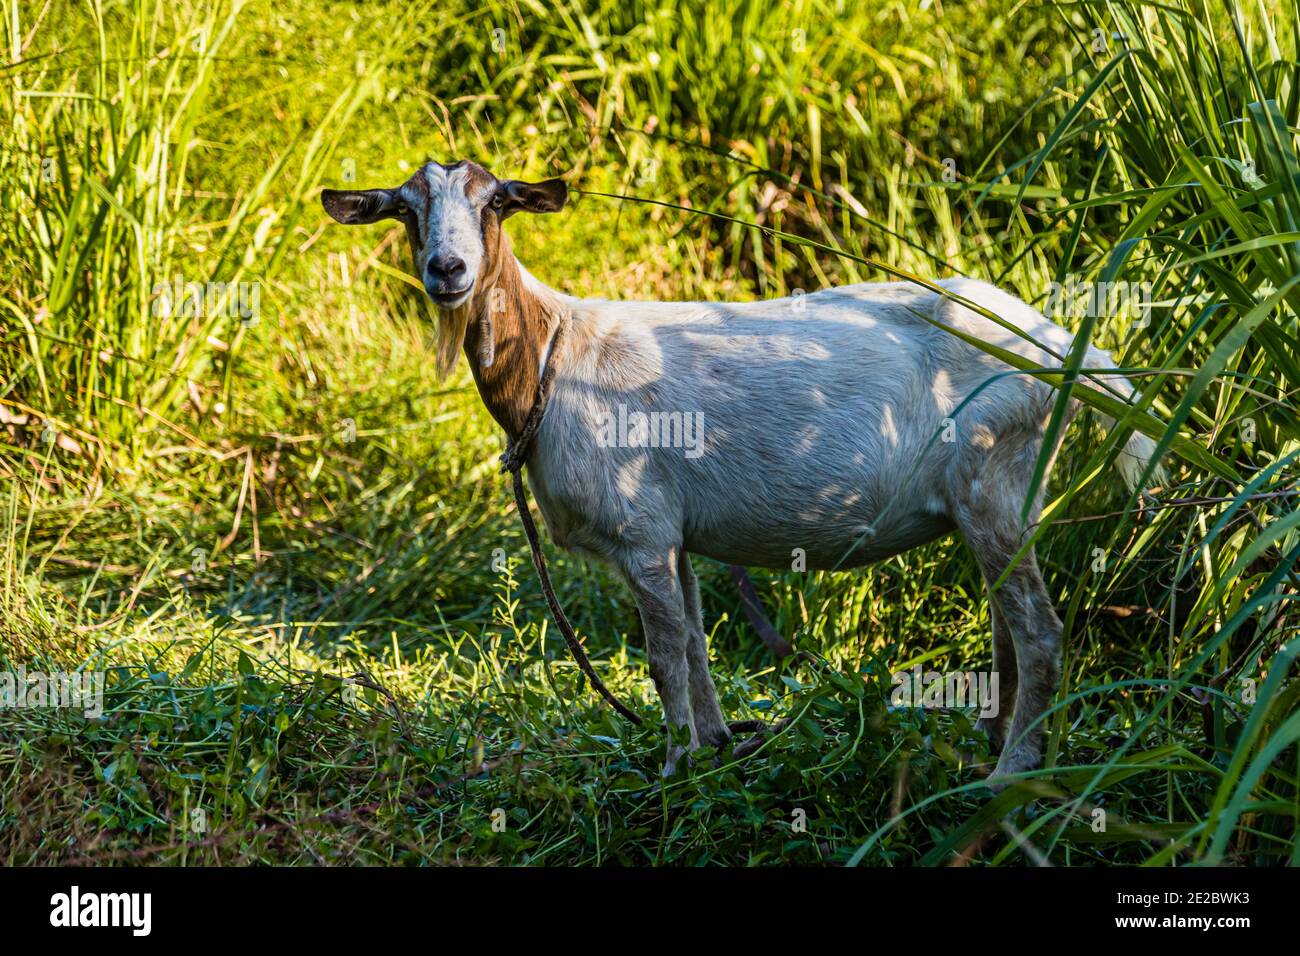 Chèvre à Happy Hill, Grenade. Les chèvres trouvent la meilleure nourriture sur la Grenade parce que la terre est fertile et assez de chutes de pluie. Au fait, les plats à la viande de chèvre sont une spécialité culinaire sur l'île Banque D'Images